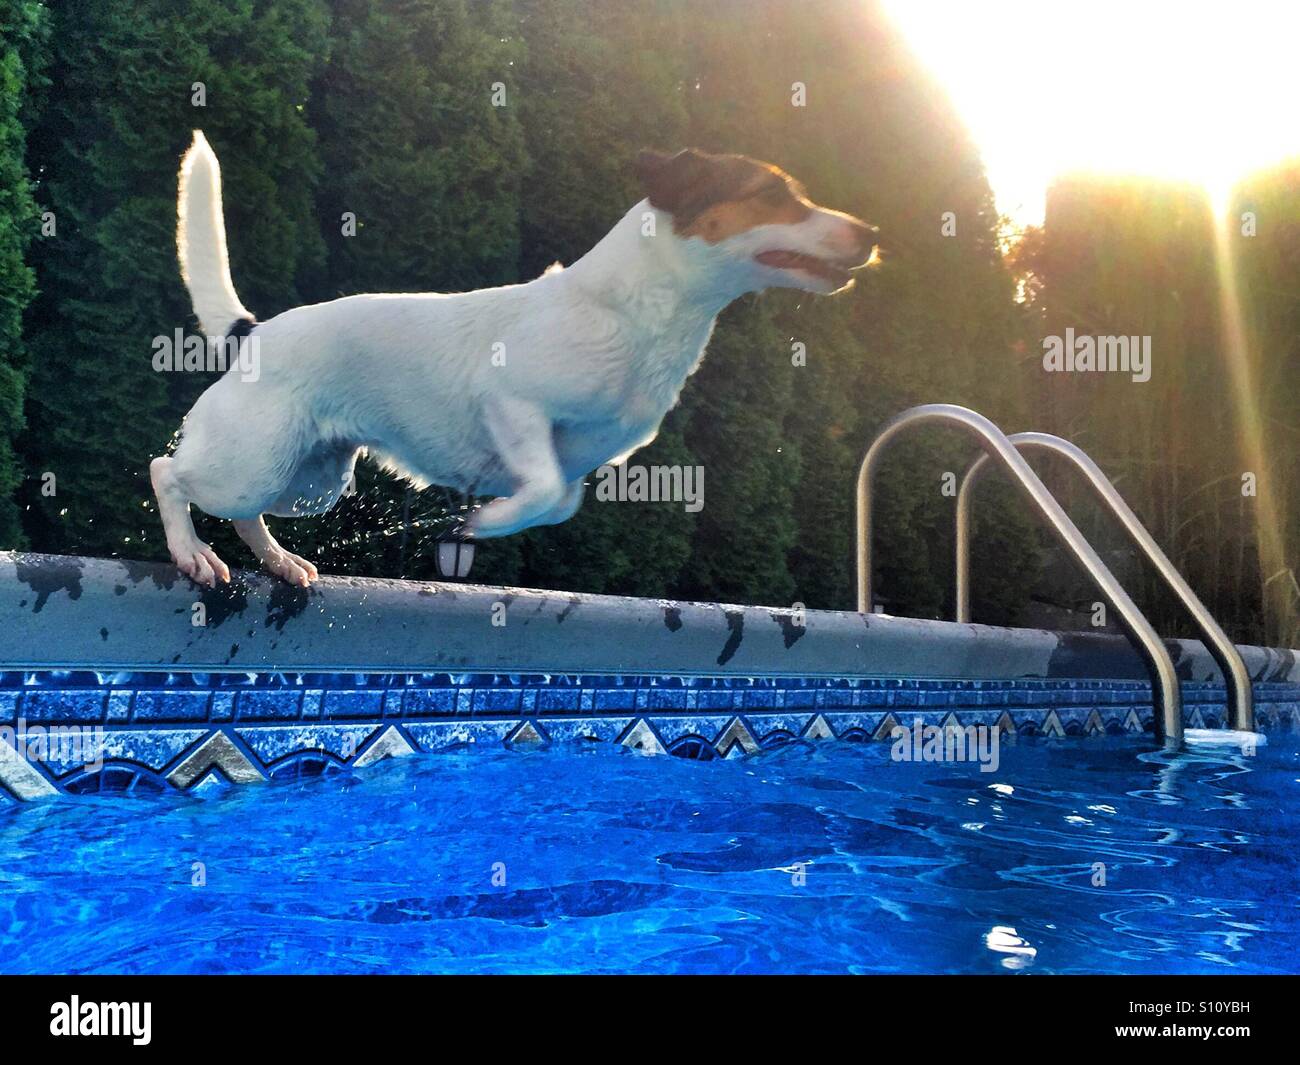 Ein Fit Hund in einen Pool springen. Aktion erschossen, natürliches Licht. Stockfoto